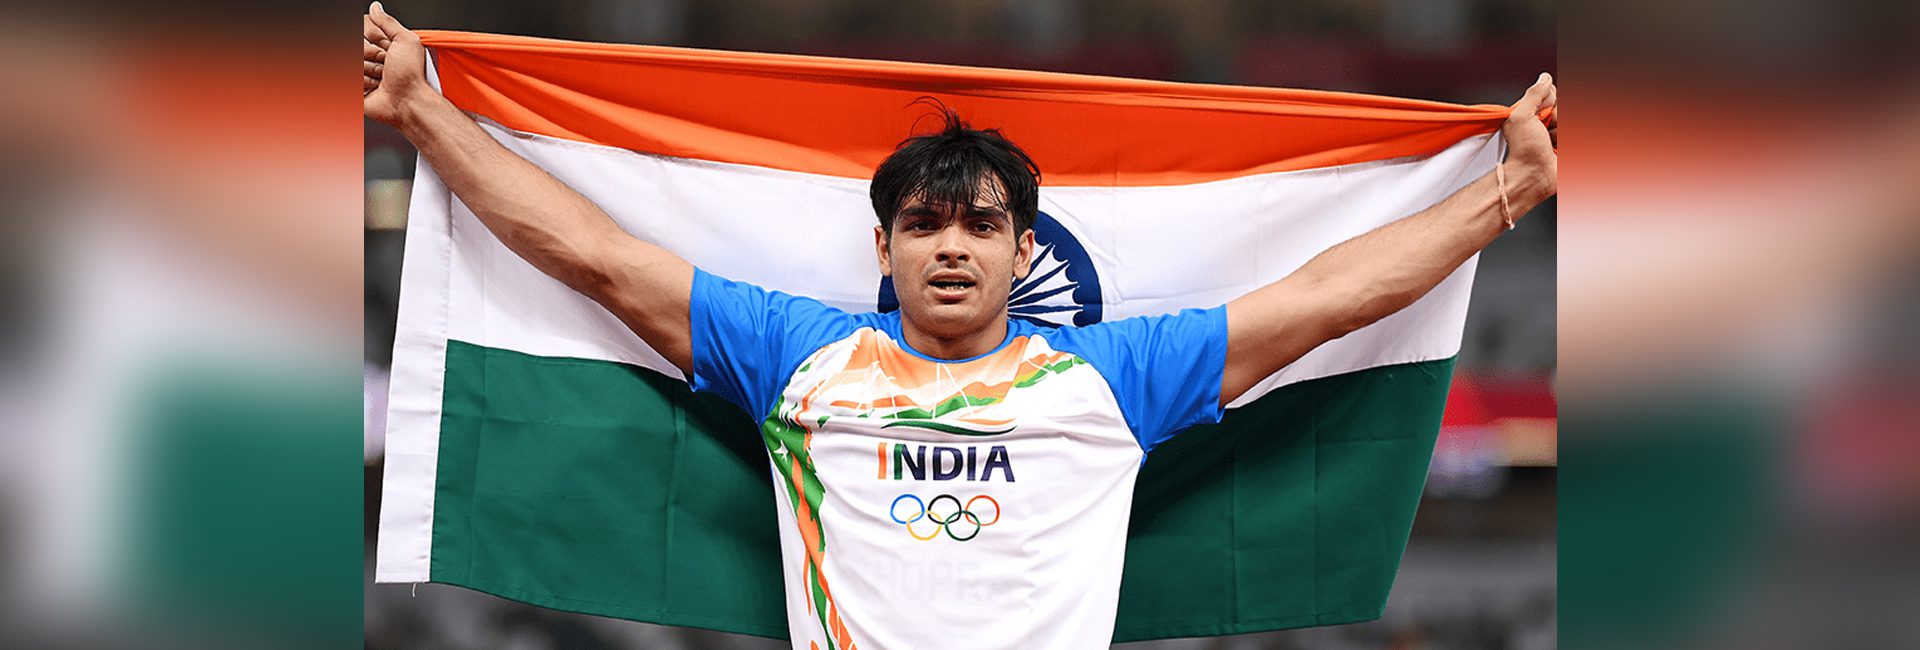 글로벌 인도인 Neeraj Chopra: 금메달로 인도를 자랑스럽게 만든 현 올림픽 챔피언